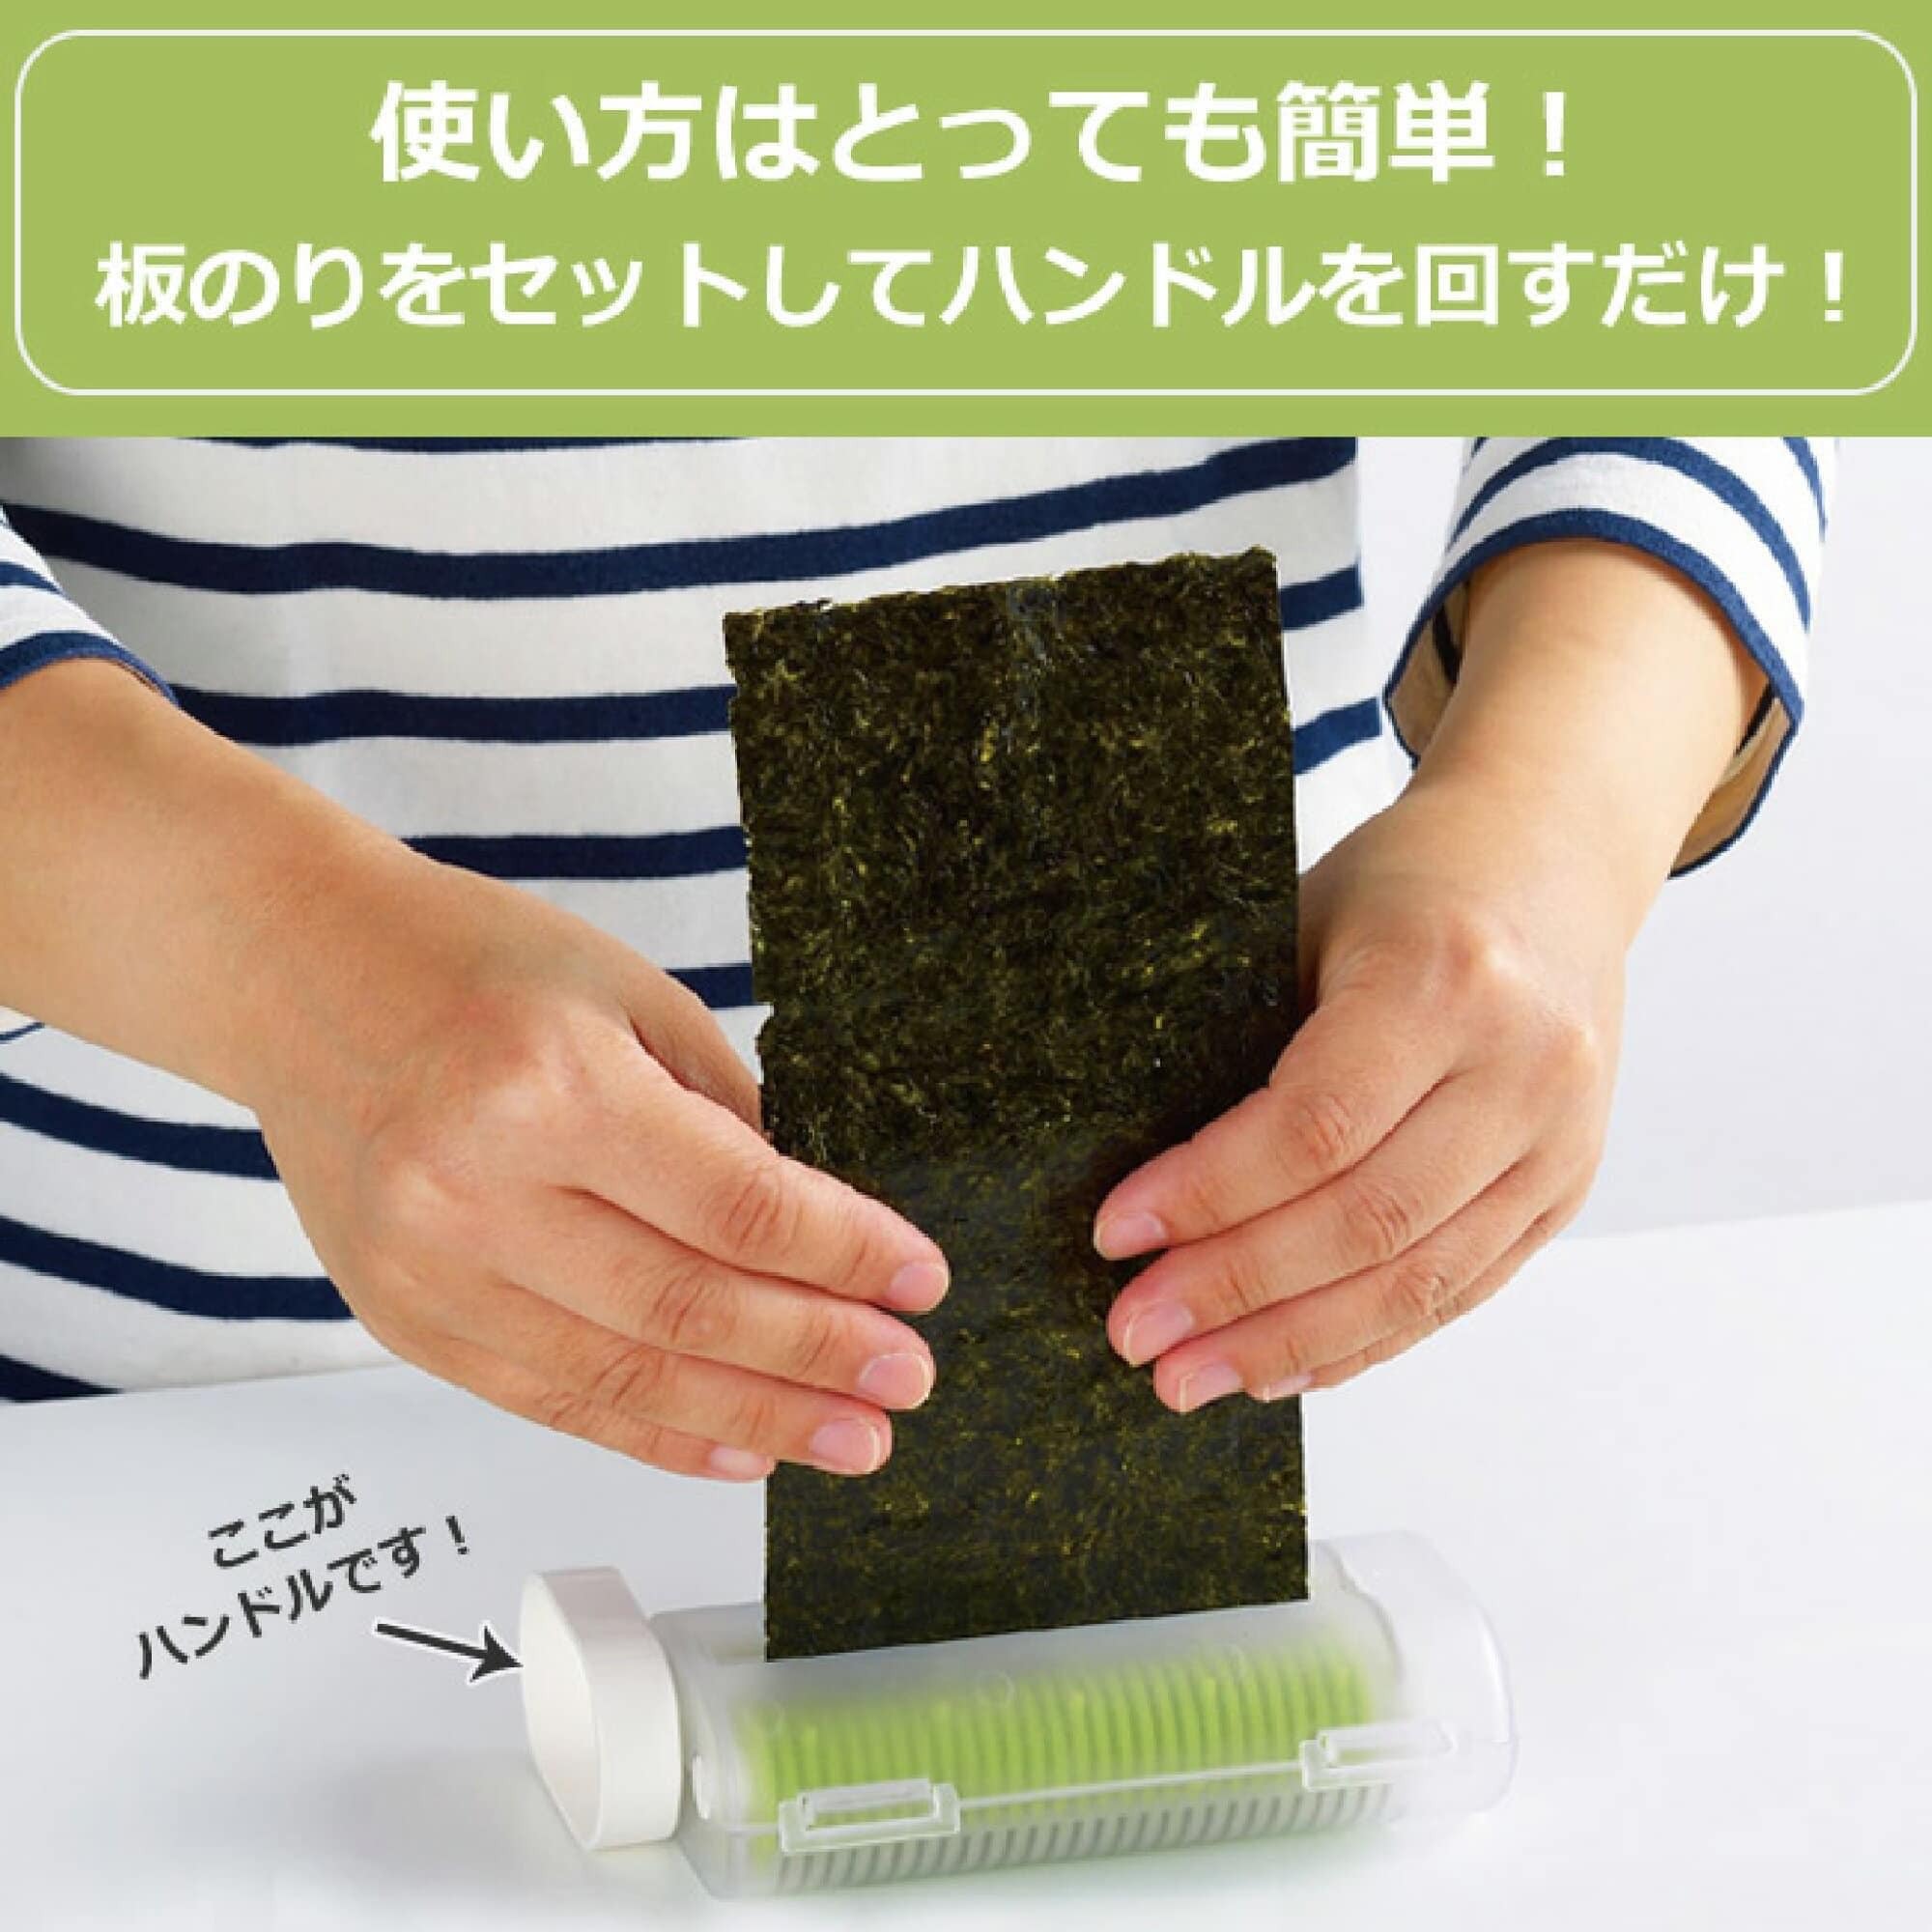 日本廚房用具【AKEBONO曙產業】餐具海苔切絲器 日本製 (6)